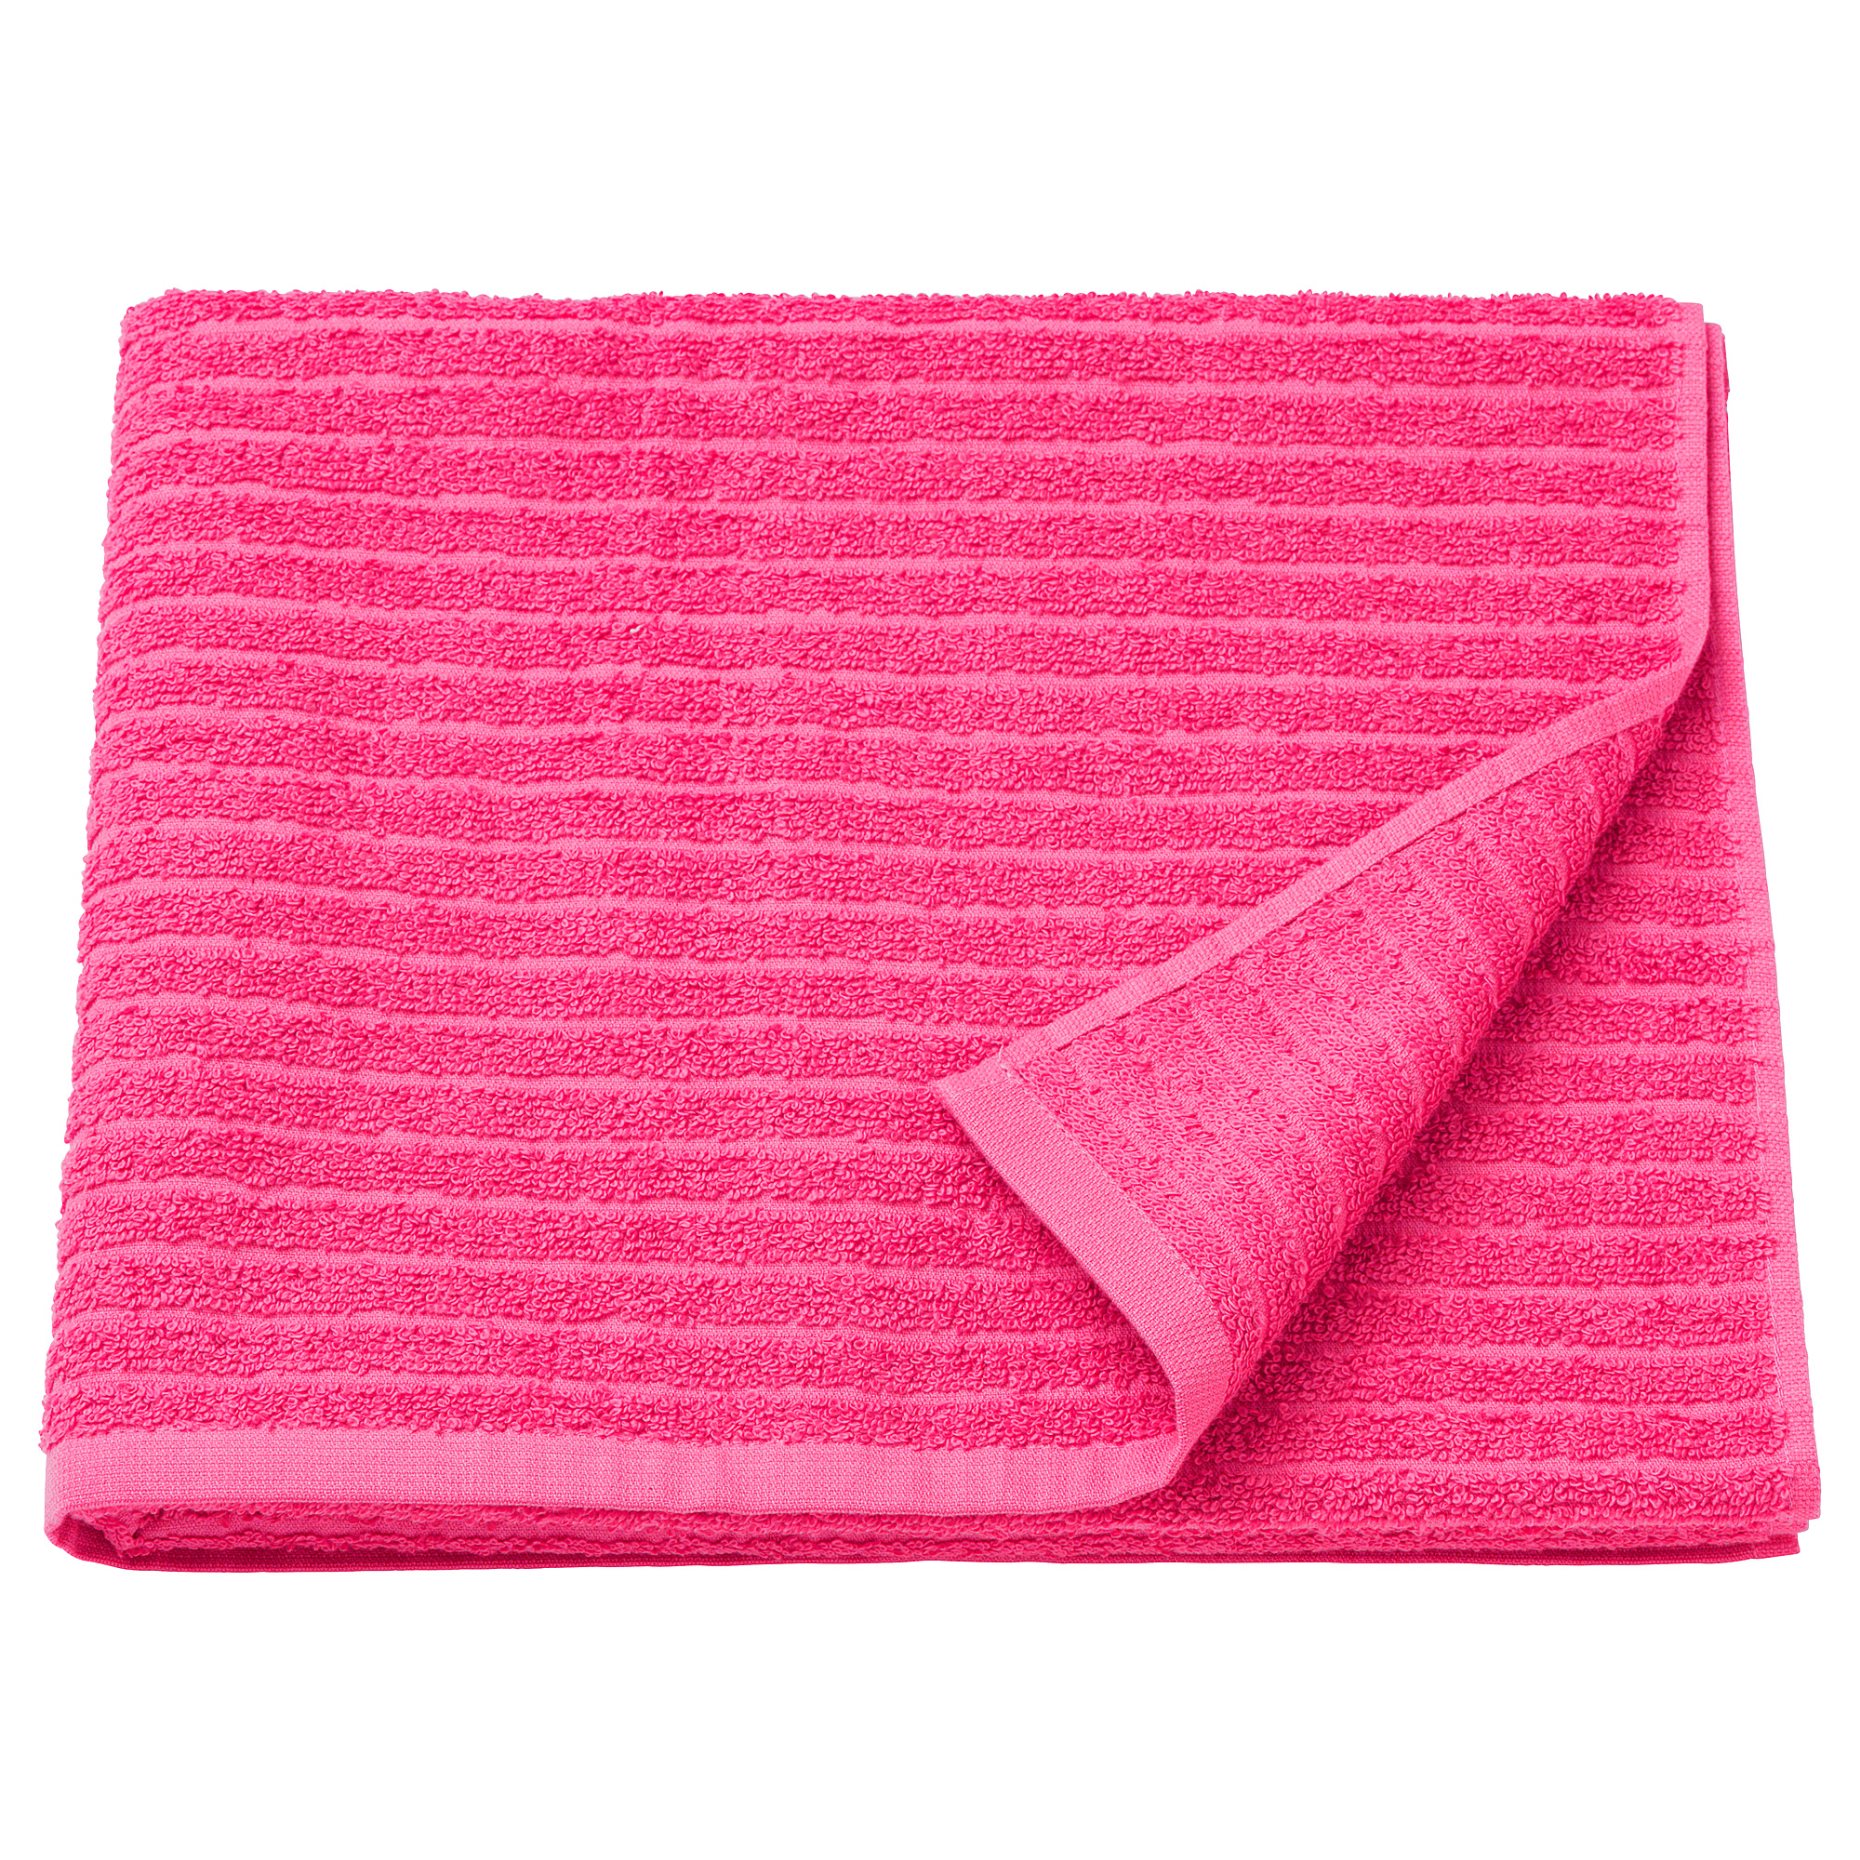 VÅGSJÖN, bath towel, 70x140 cm, 505.710.83